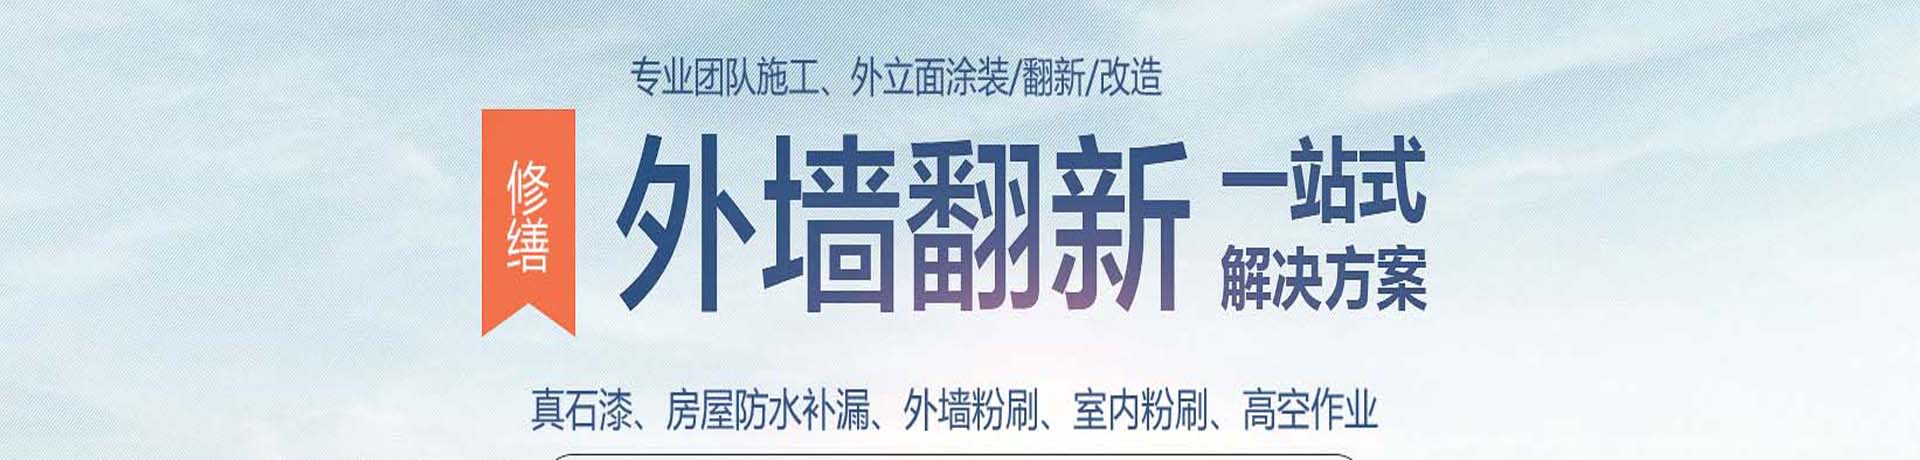 上海外墙高空涂料粉刷,外墙真石漆施工,上海外墙翻新公司,专业的墙面涂刷服务-上海物美环境工程有限公司 - 【推荐】 - 企业文化